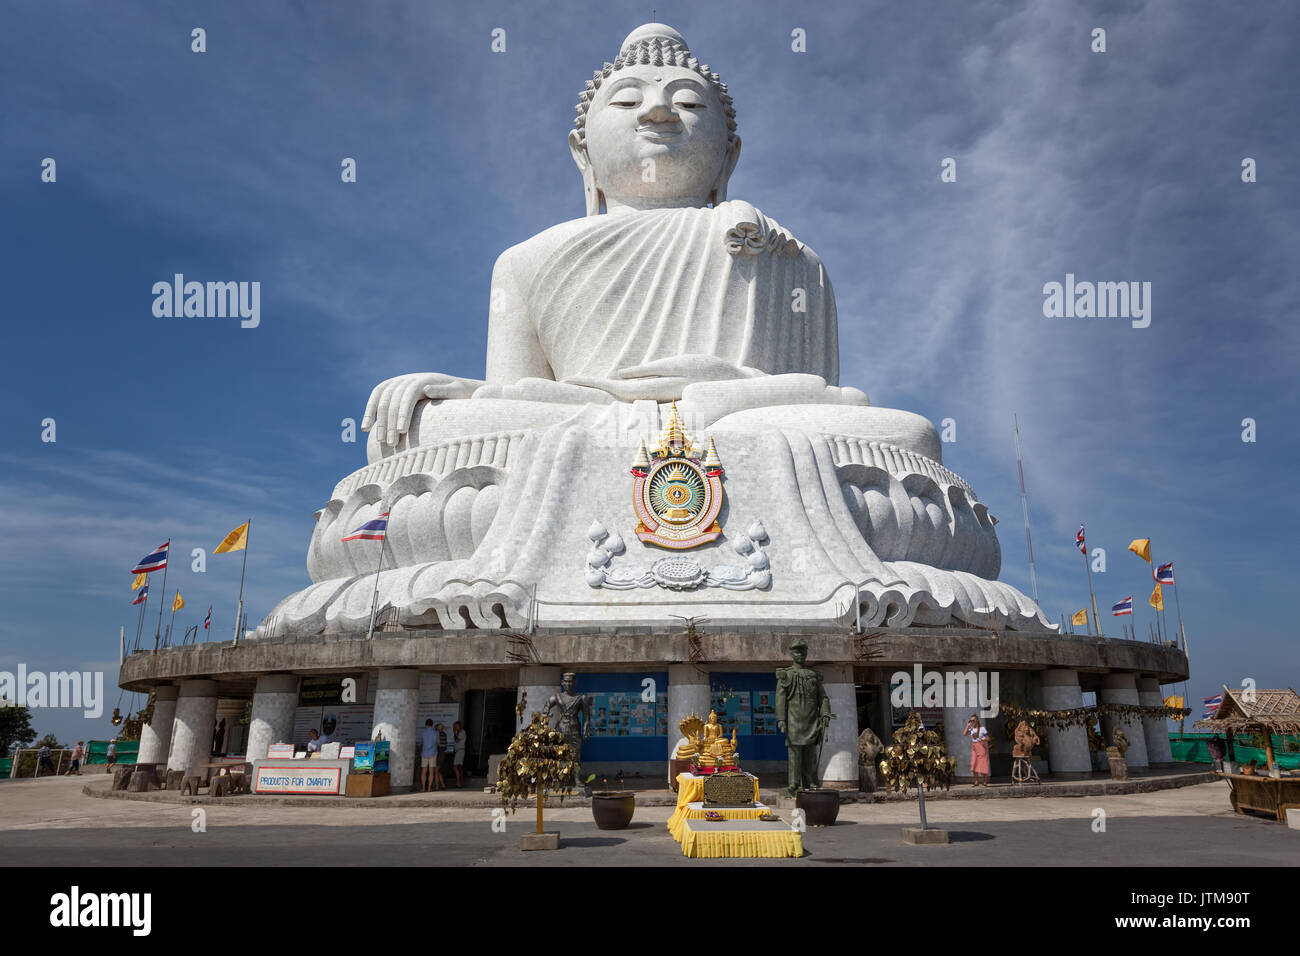 Big Buddha Phuket est une énorme statue en marbre blanc sur le sommet du mont, Nagakerd Chalong - Phuket, Thaïlande Banque D'Images